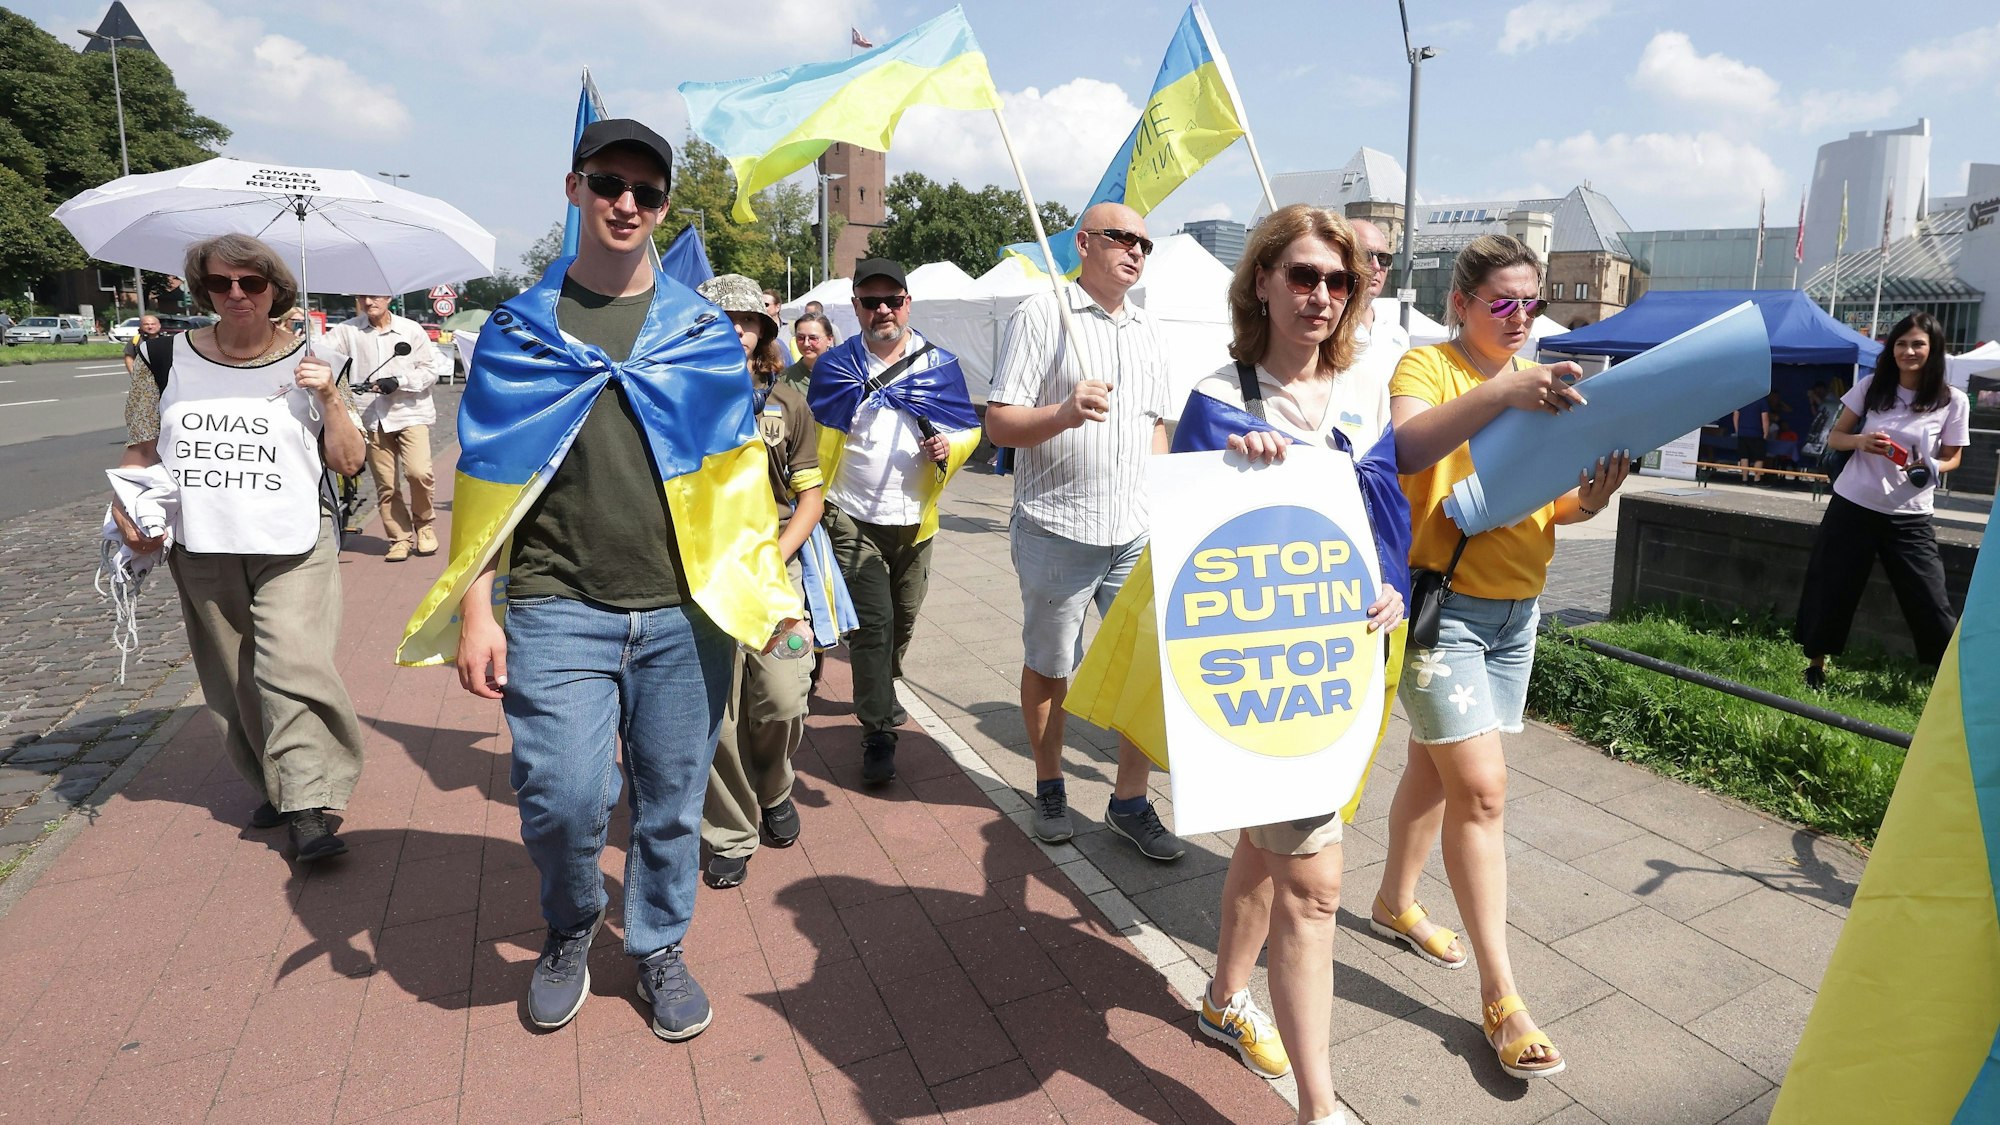 Menschen demonstrieren gegen den russischen Angriffskrieg. Zum zweiten Mal findet der Ukraine-Tag mit einem Benefizfestival für ukrainische Kunst und Kultur am Rheinufer in Köln statt.